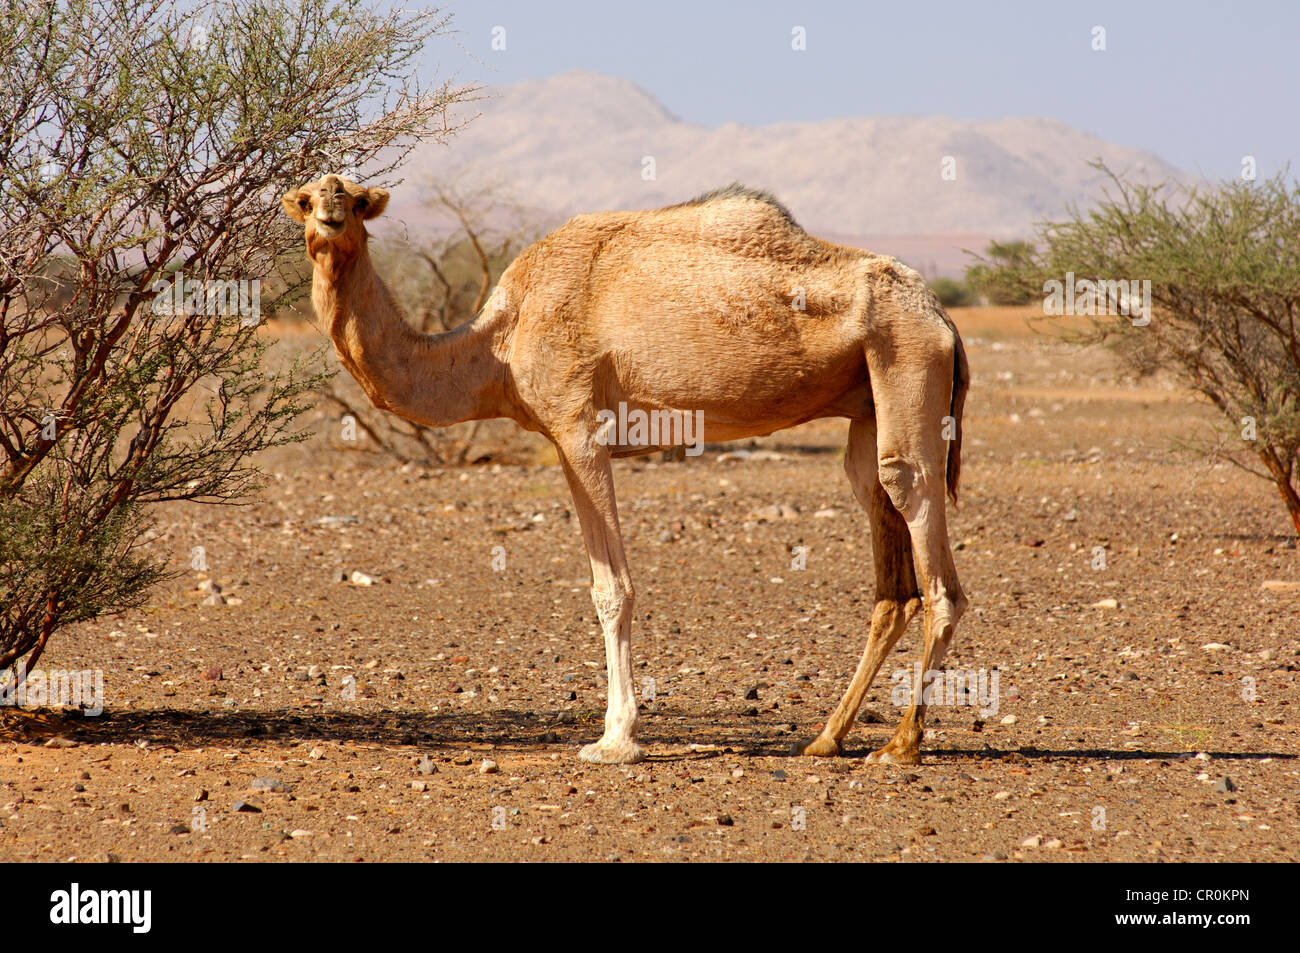 Semi-sauvages Dromadaire (Camelus dromedarius), dans son habitat naturel dans un semi-désert, Sultanat d'Oman, au Moyen-Orient Banque D'Images